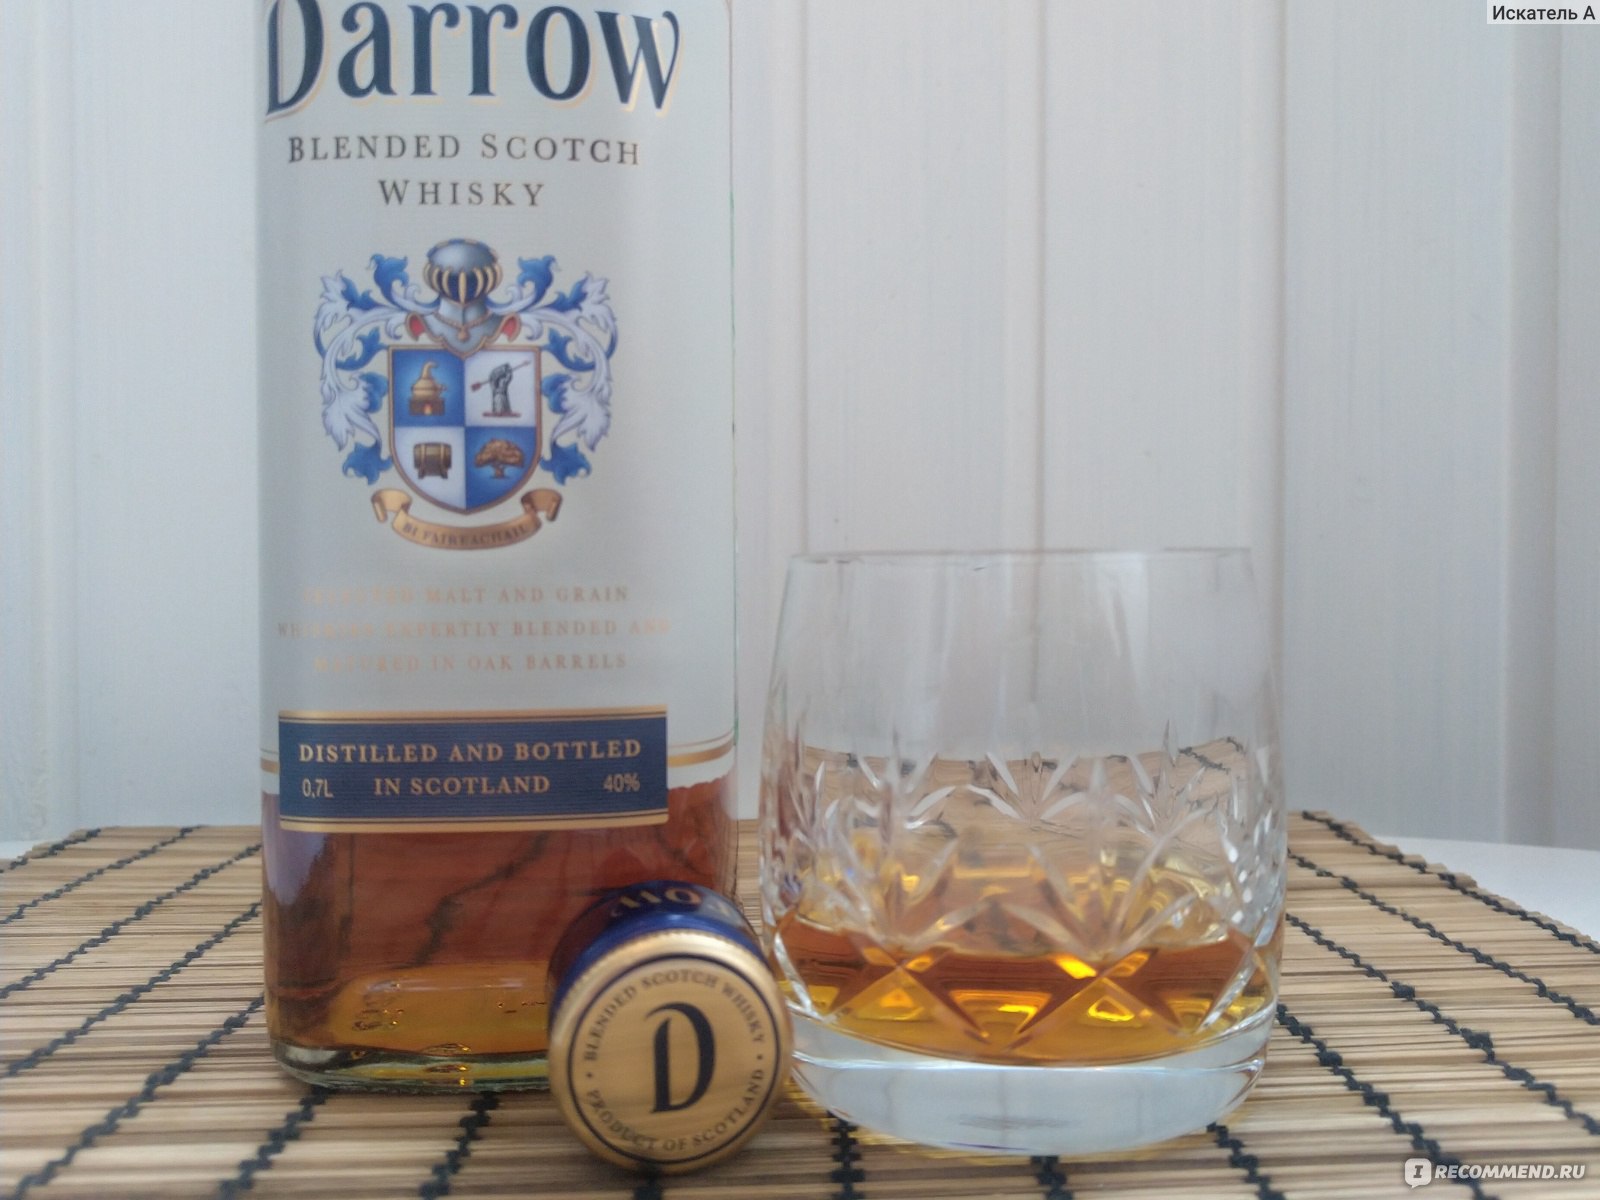 Darrow цена 0.7. Виски Дэрроу шотландский купажированный. Виски Дэрроу 0.5 шотландский купажированный 40. Darrow шотландский виски. Виски шотландский купажированный Дэрроу 40% 0,5л.